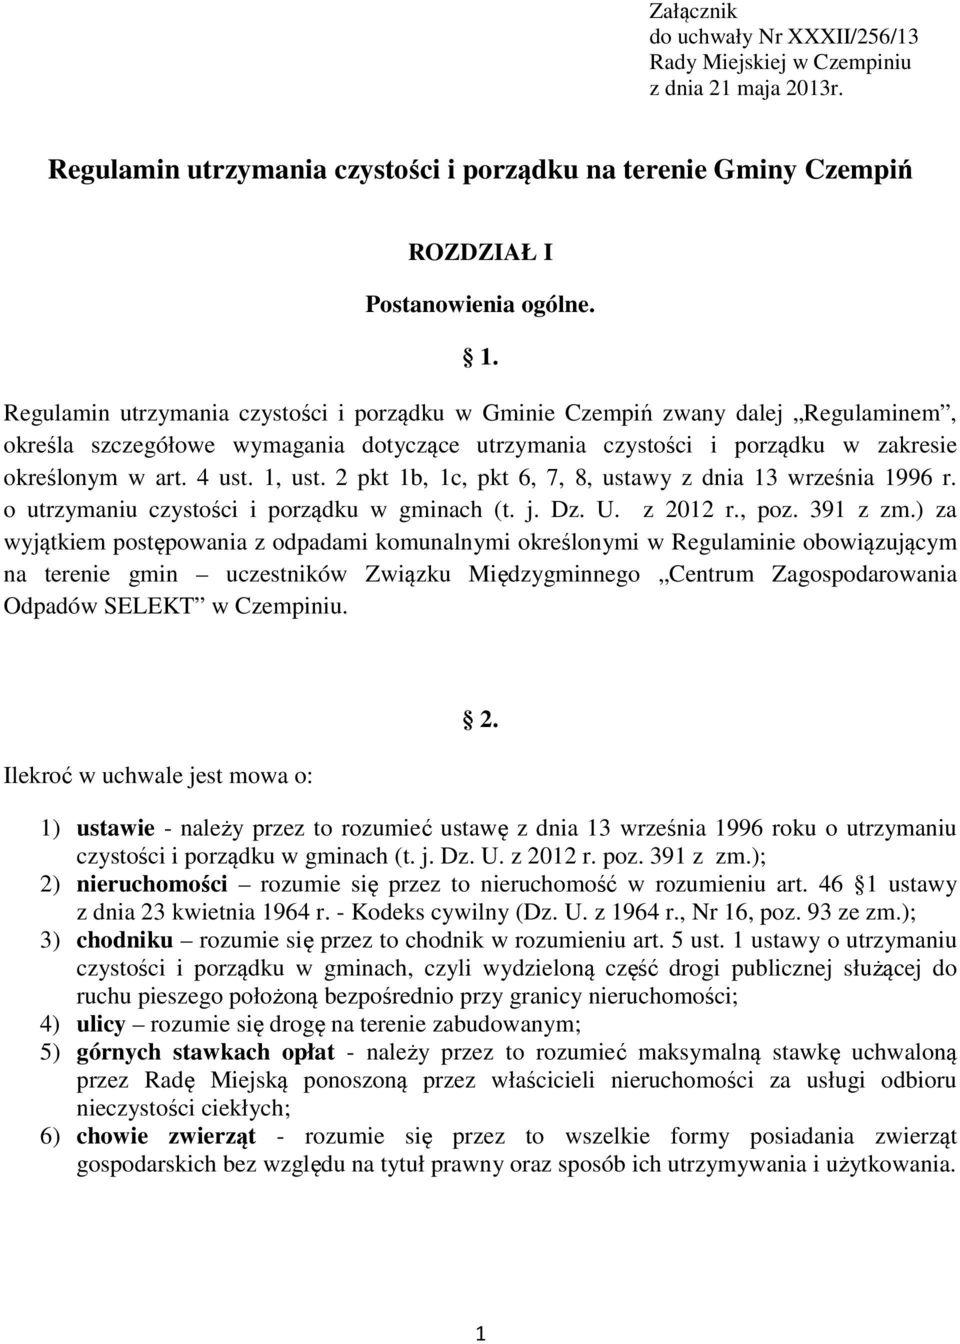 2 pkt 1b, 1c, pkt 6, 7, 8, ustawy z dnia 13 września 1996 r. o utrzymaniu czystości i porządku w gminach (t. j. Dz. U. z 2012 r., poz. 391 z zm.